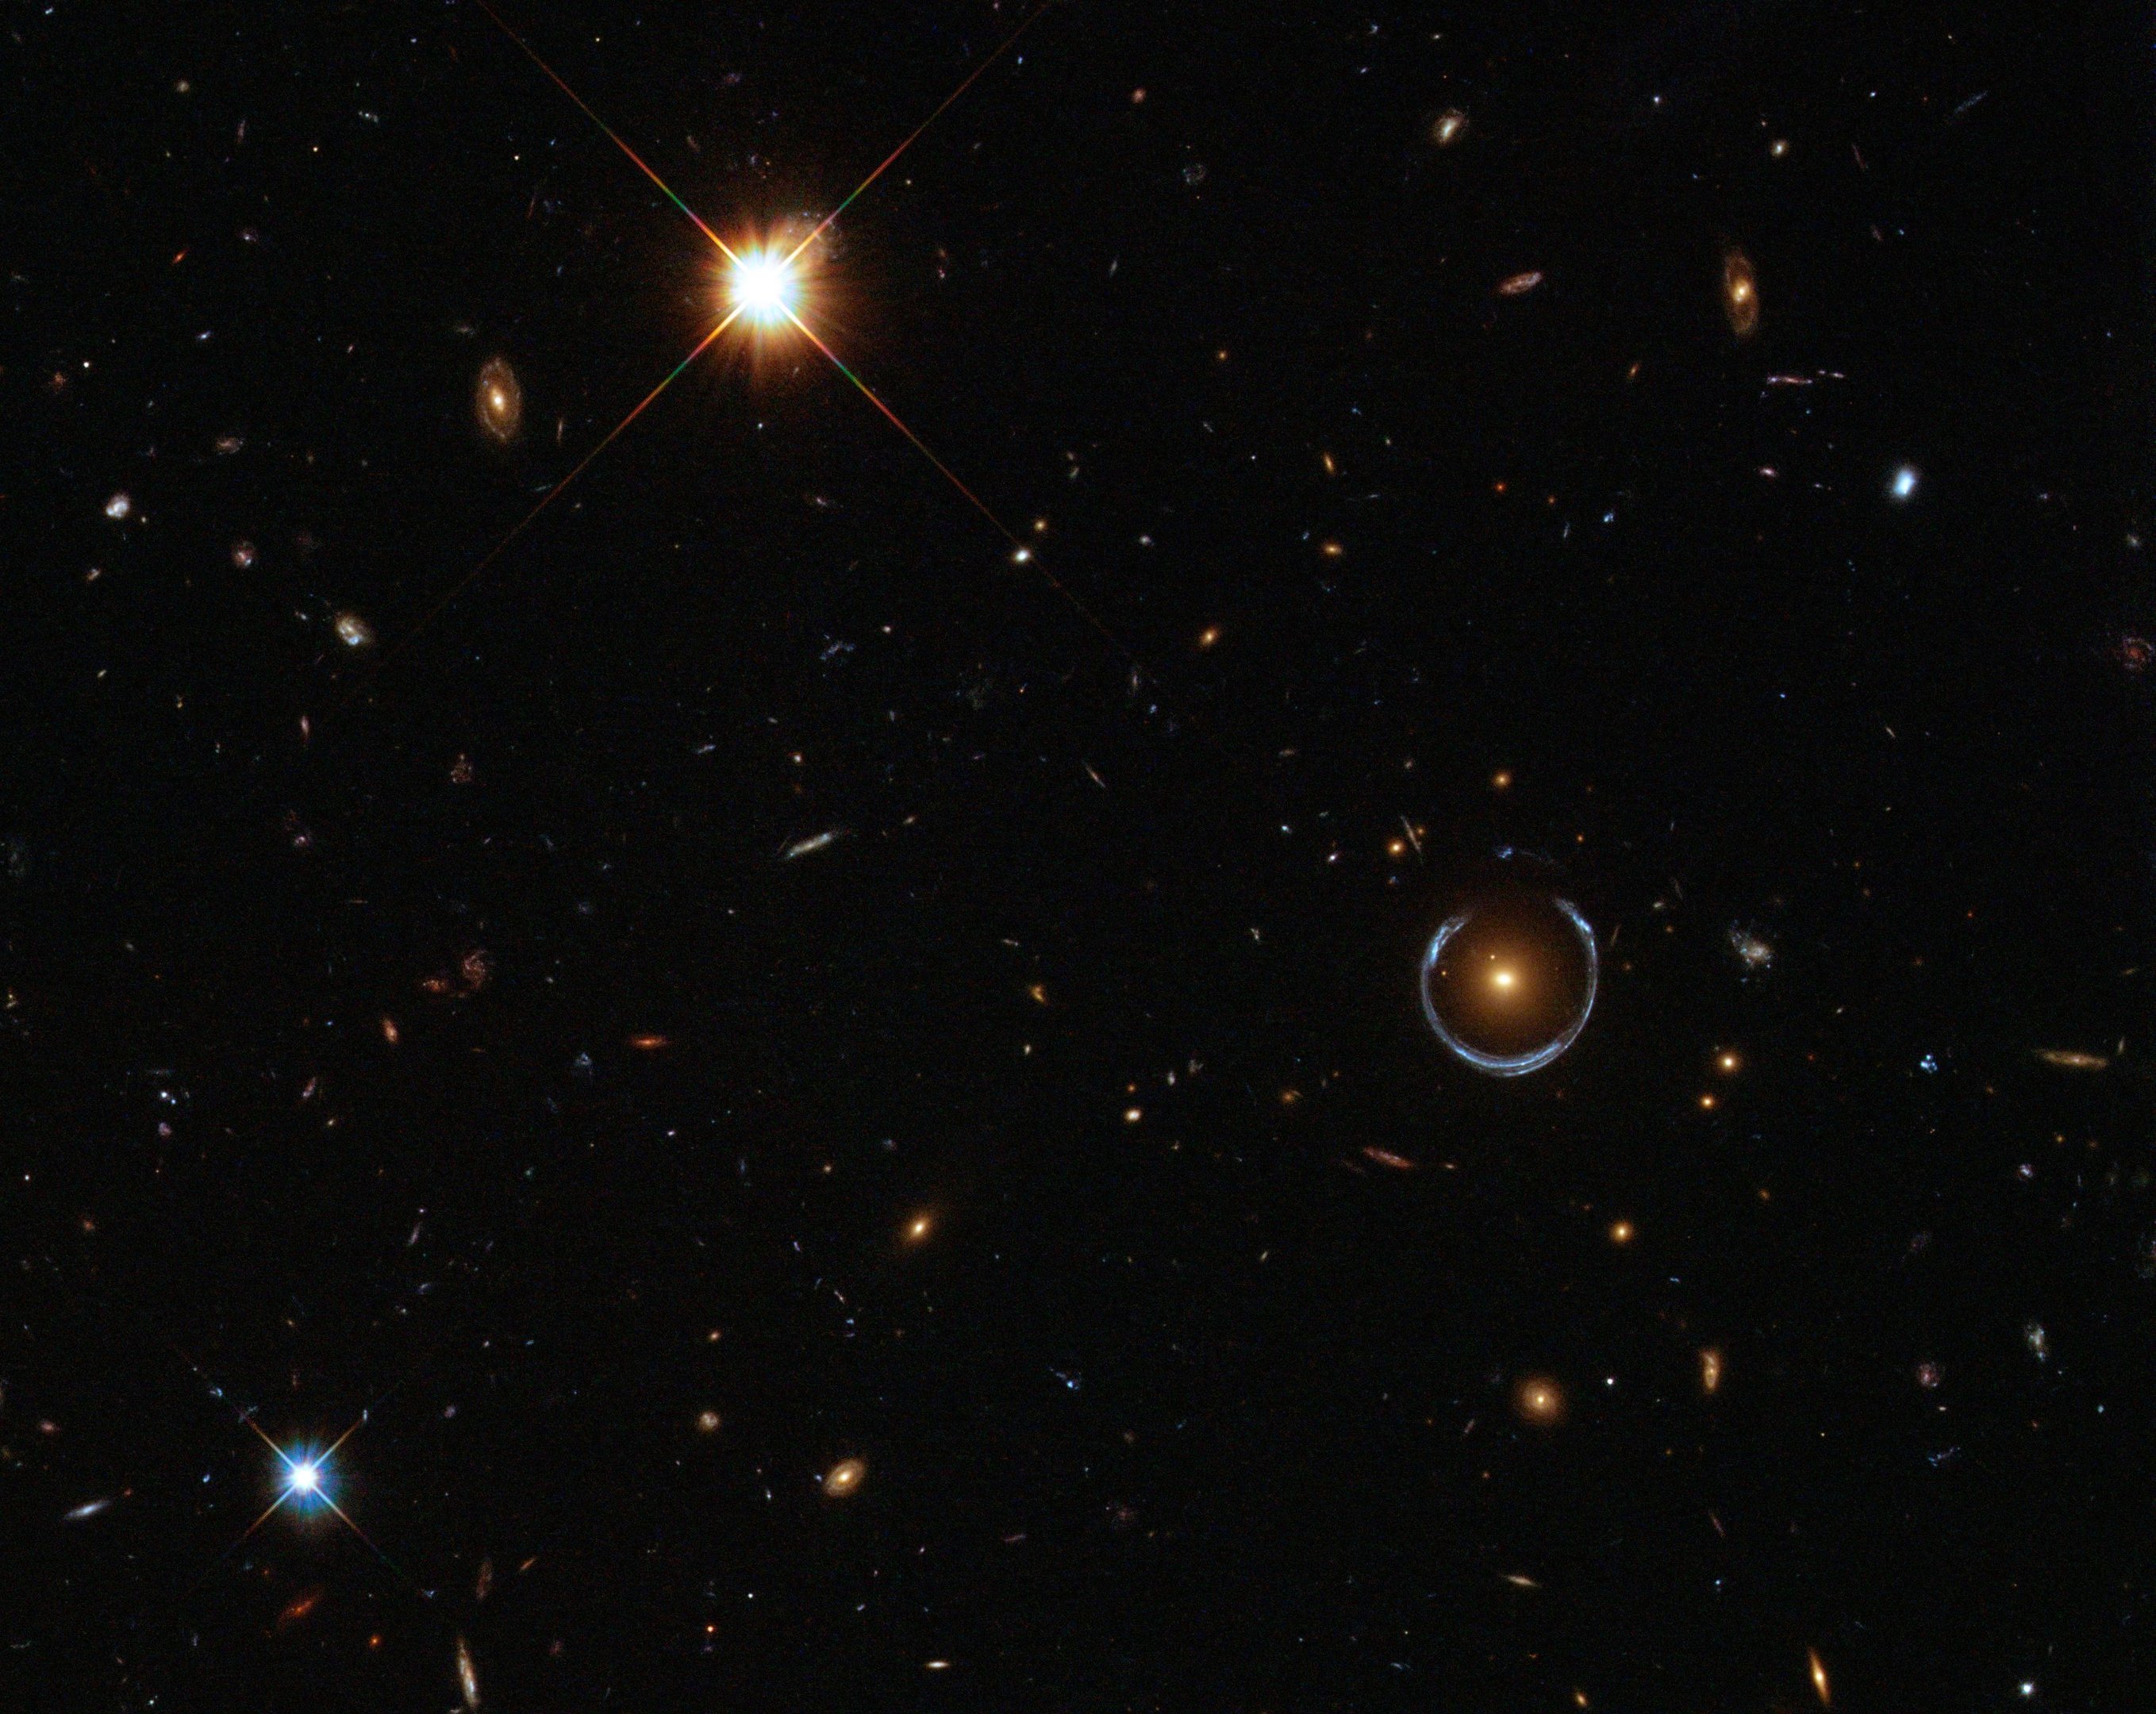 Galáxia distorcendo a luz de uma galáxia mais distante (à direita) criando um Anel de Einstein.